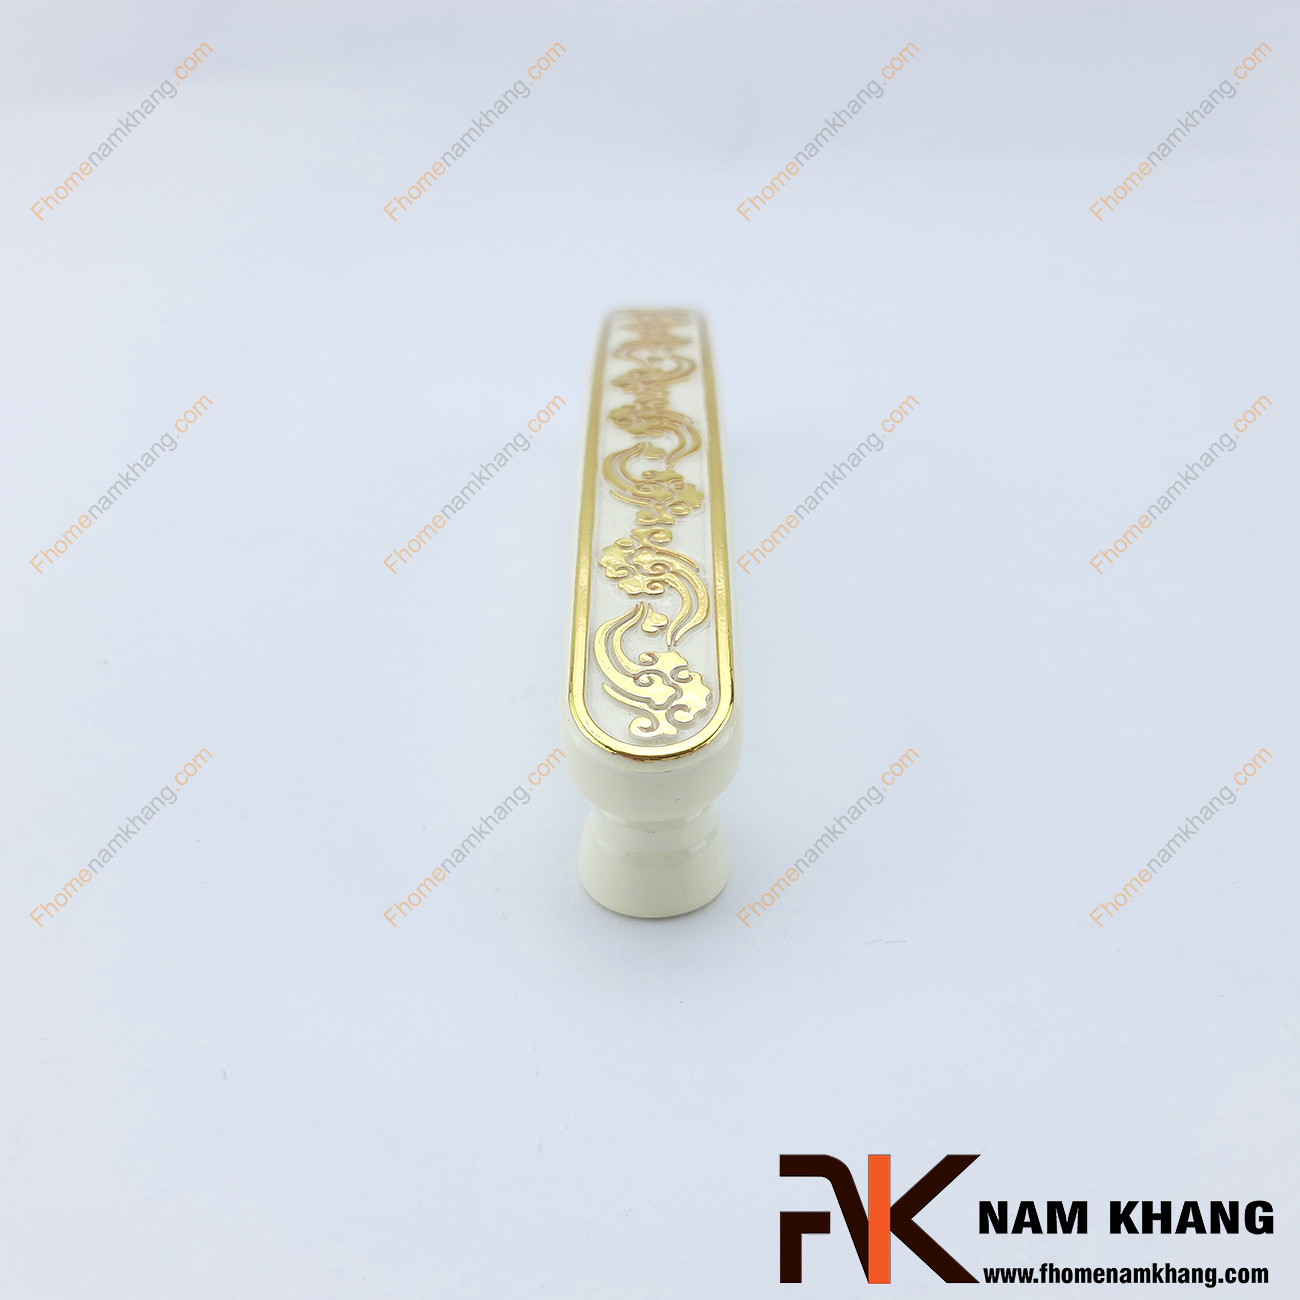 Tay nắm tủ màu trắng viền vàng NK257-T, một sản phẩm tay nắm thương hiệu có chất lượng được đảm bảo tốt nhất. 